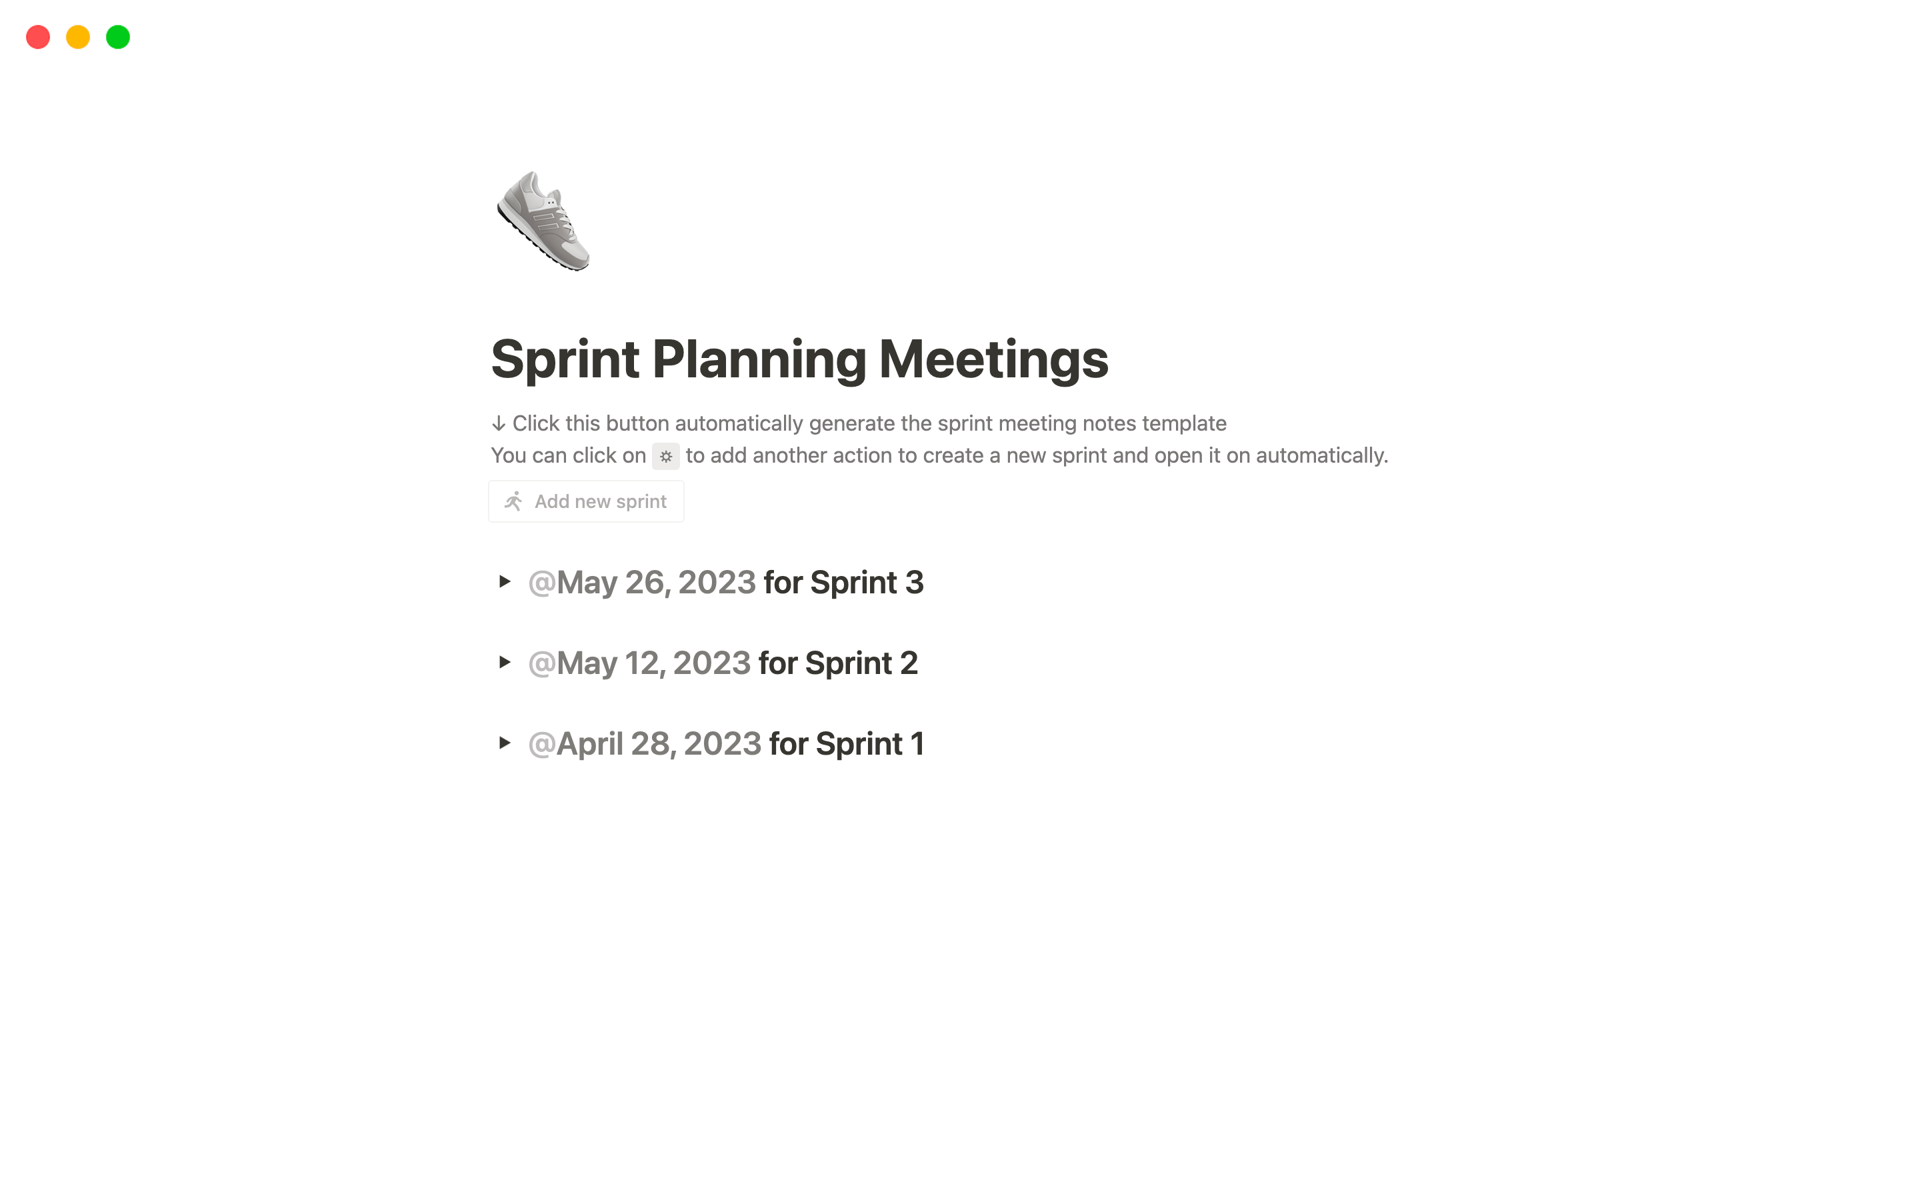 Vista previa de una plantilla para Reuniones de planificación de sprint